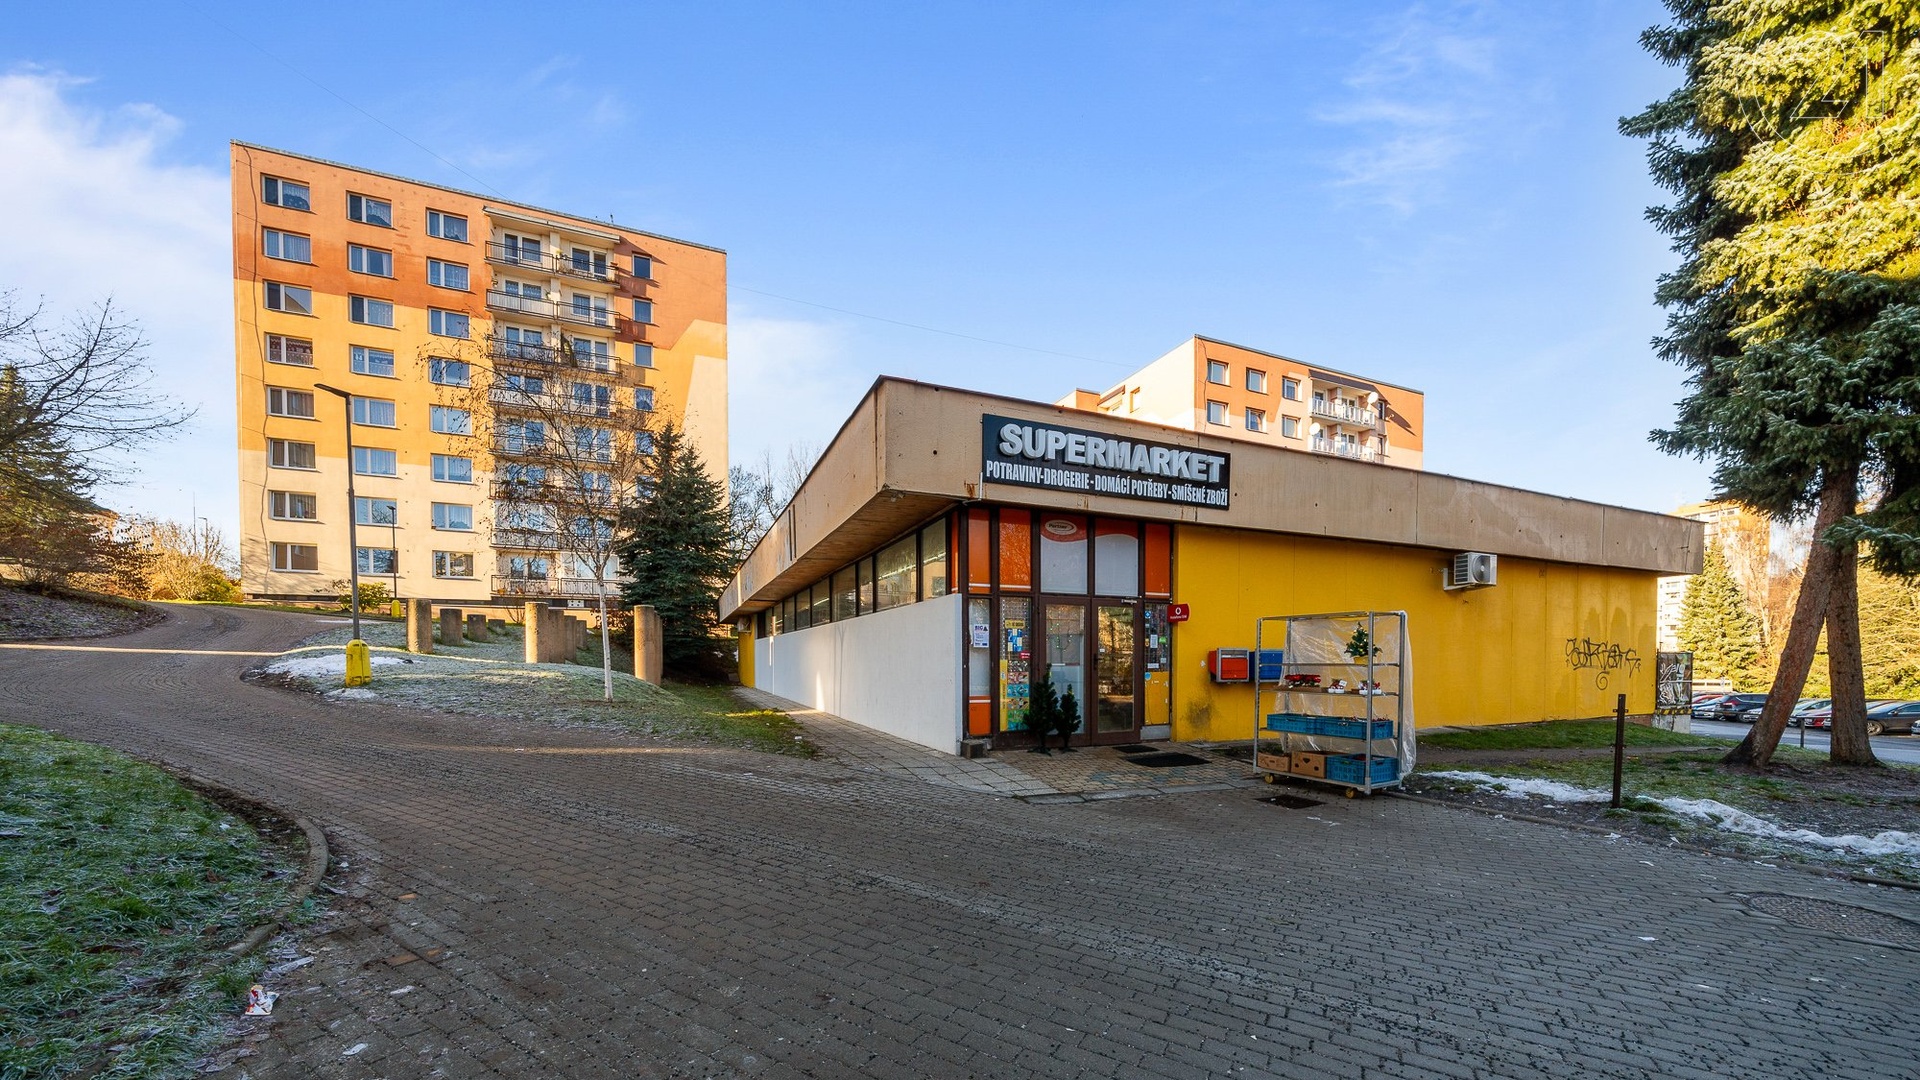 Prodej slunného bytu 4+1 se dvěma lodžiemi, 83,5 m² - Jablonec nad Nisou